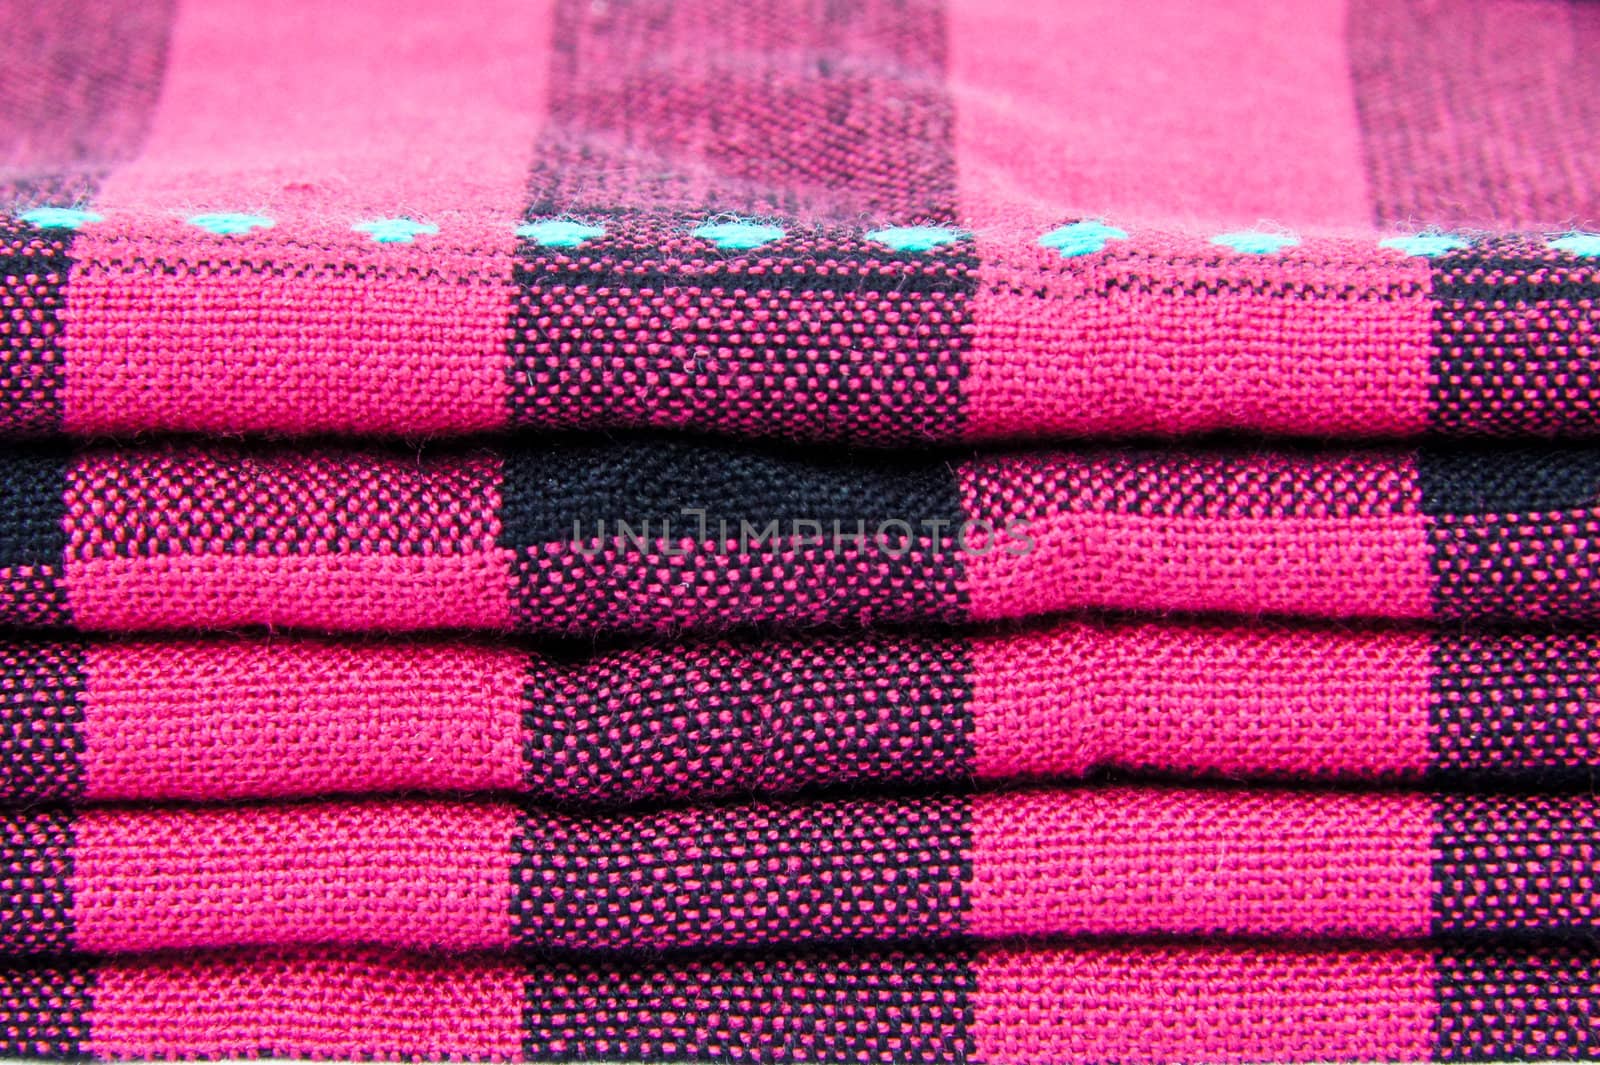 Hand woven fabrics